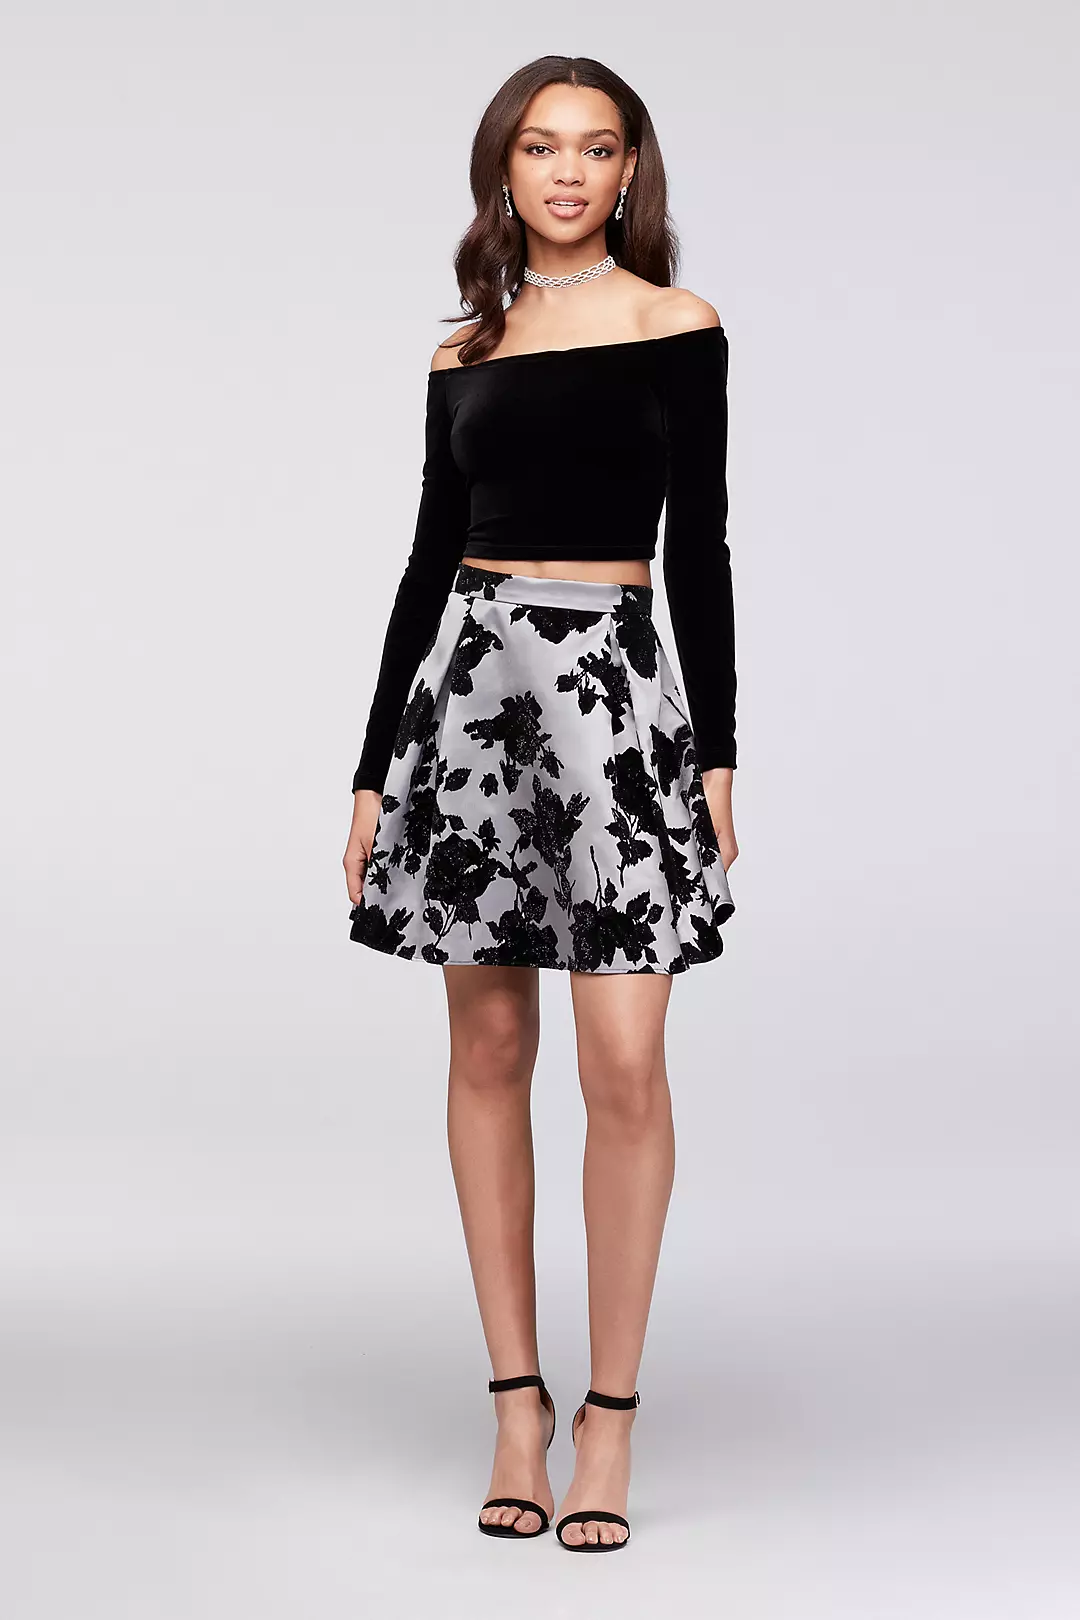 Velvet Top Off-the-Shoulder and Flocked Skirt Set Image